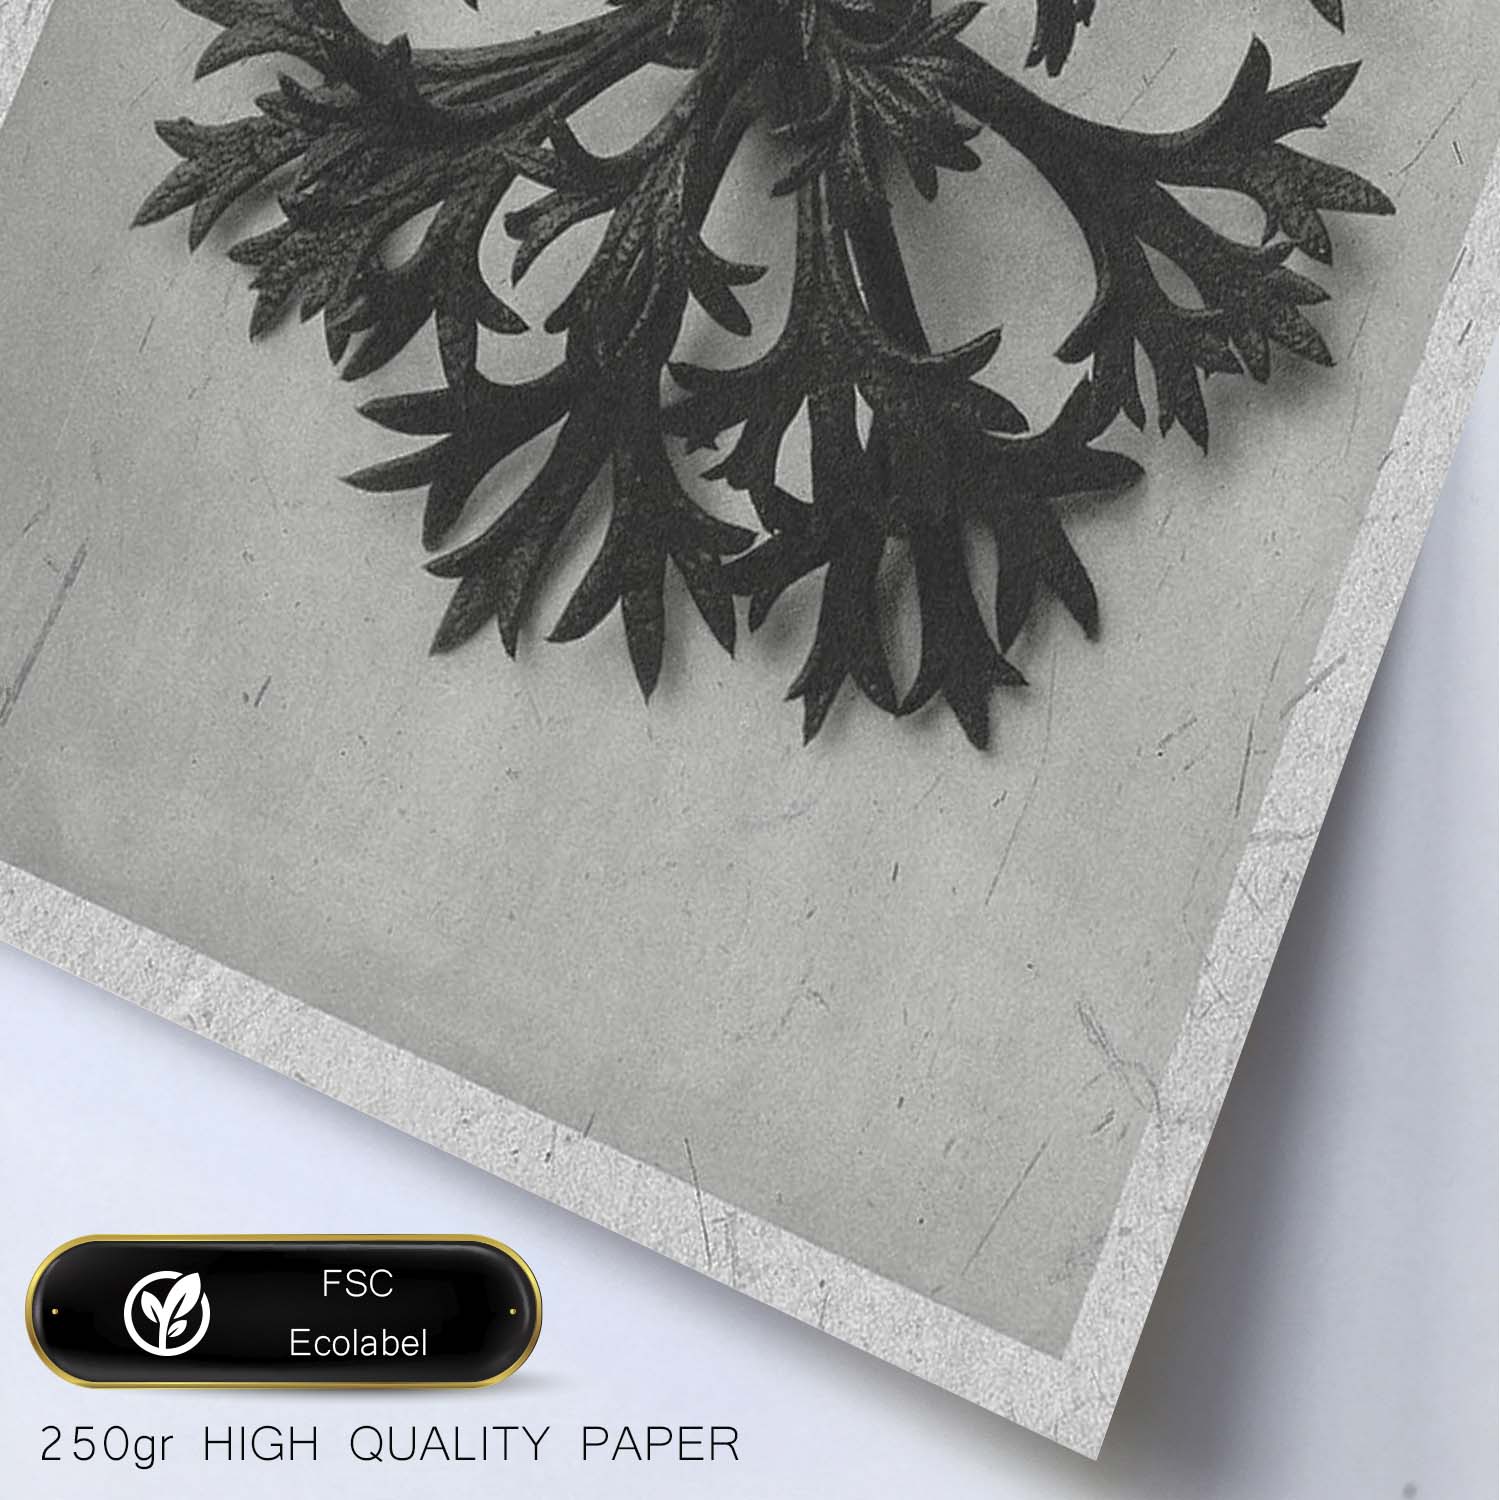 Lámina Planta blanco y negro 60. Pósters con ilustraciones de flores y plantas en tonos grises.-Artwork-Nacnic-Nacnic Estudio SL